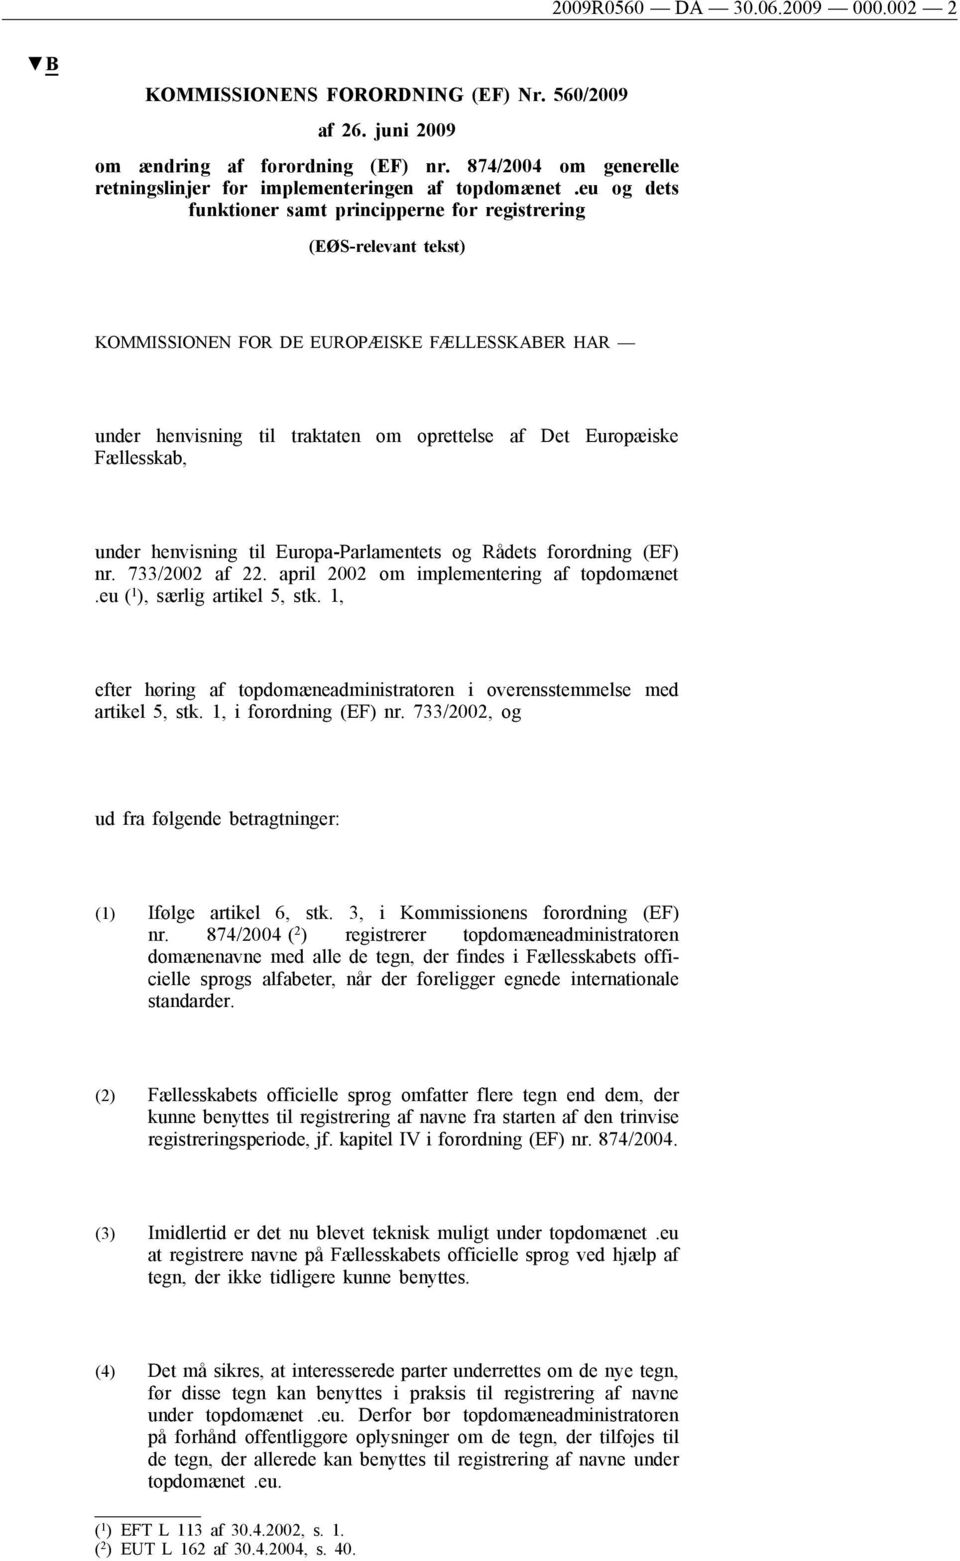 Fællesskab, under henvisning til Europa-Parlamentets og Rådets forordning (EF) nr. 733/2002 af 22. april 2002 om implementering af topdomænet.eu ( 1 ), særlig artikel 5, stk.